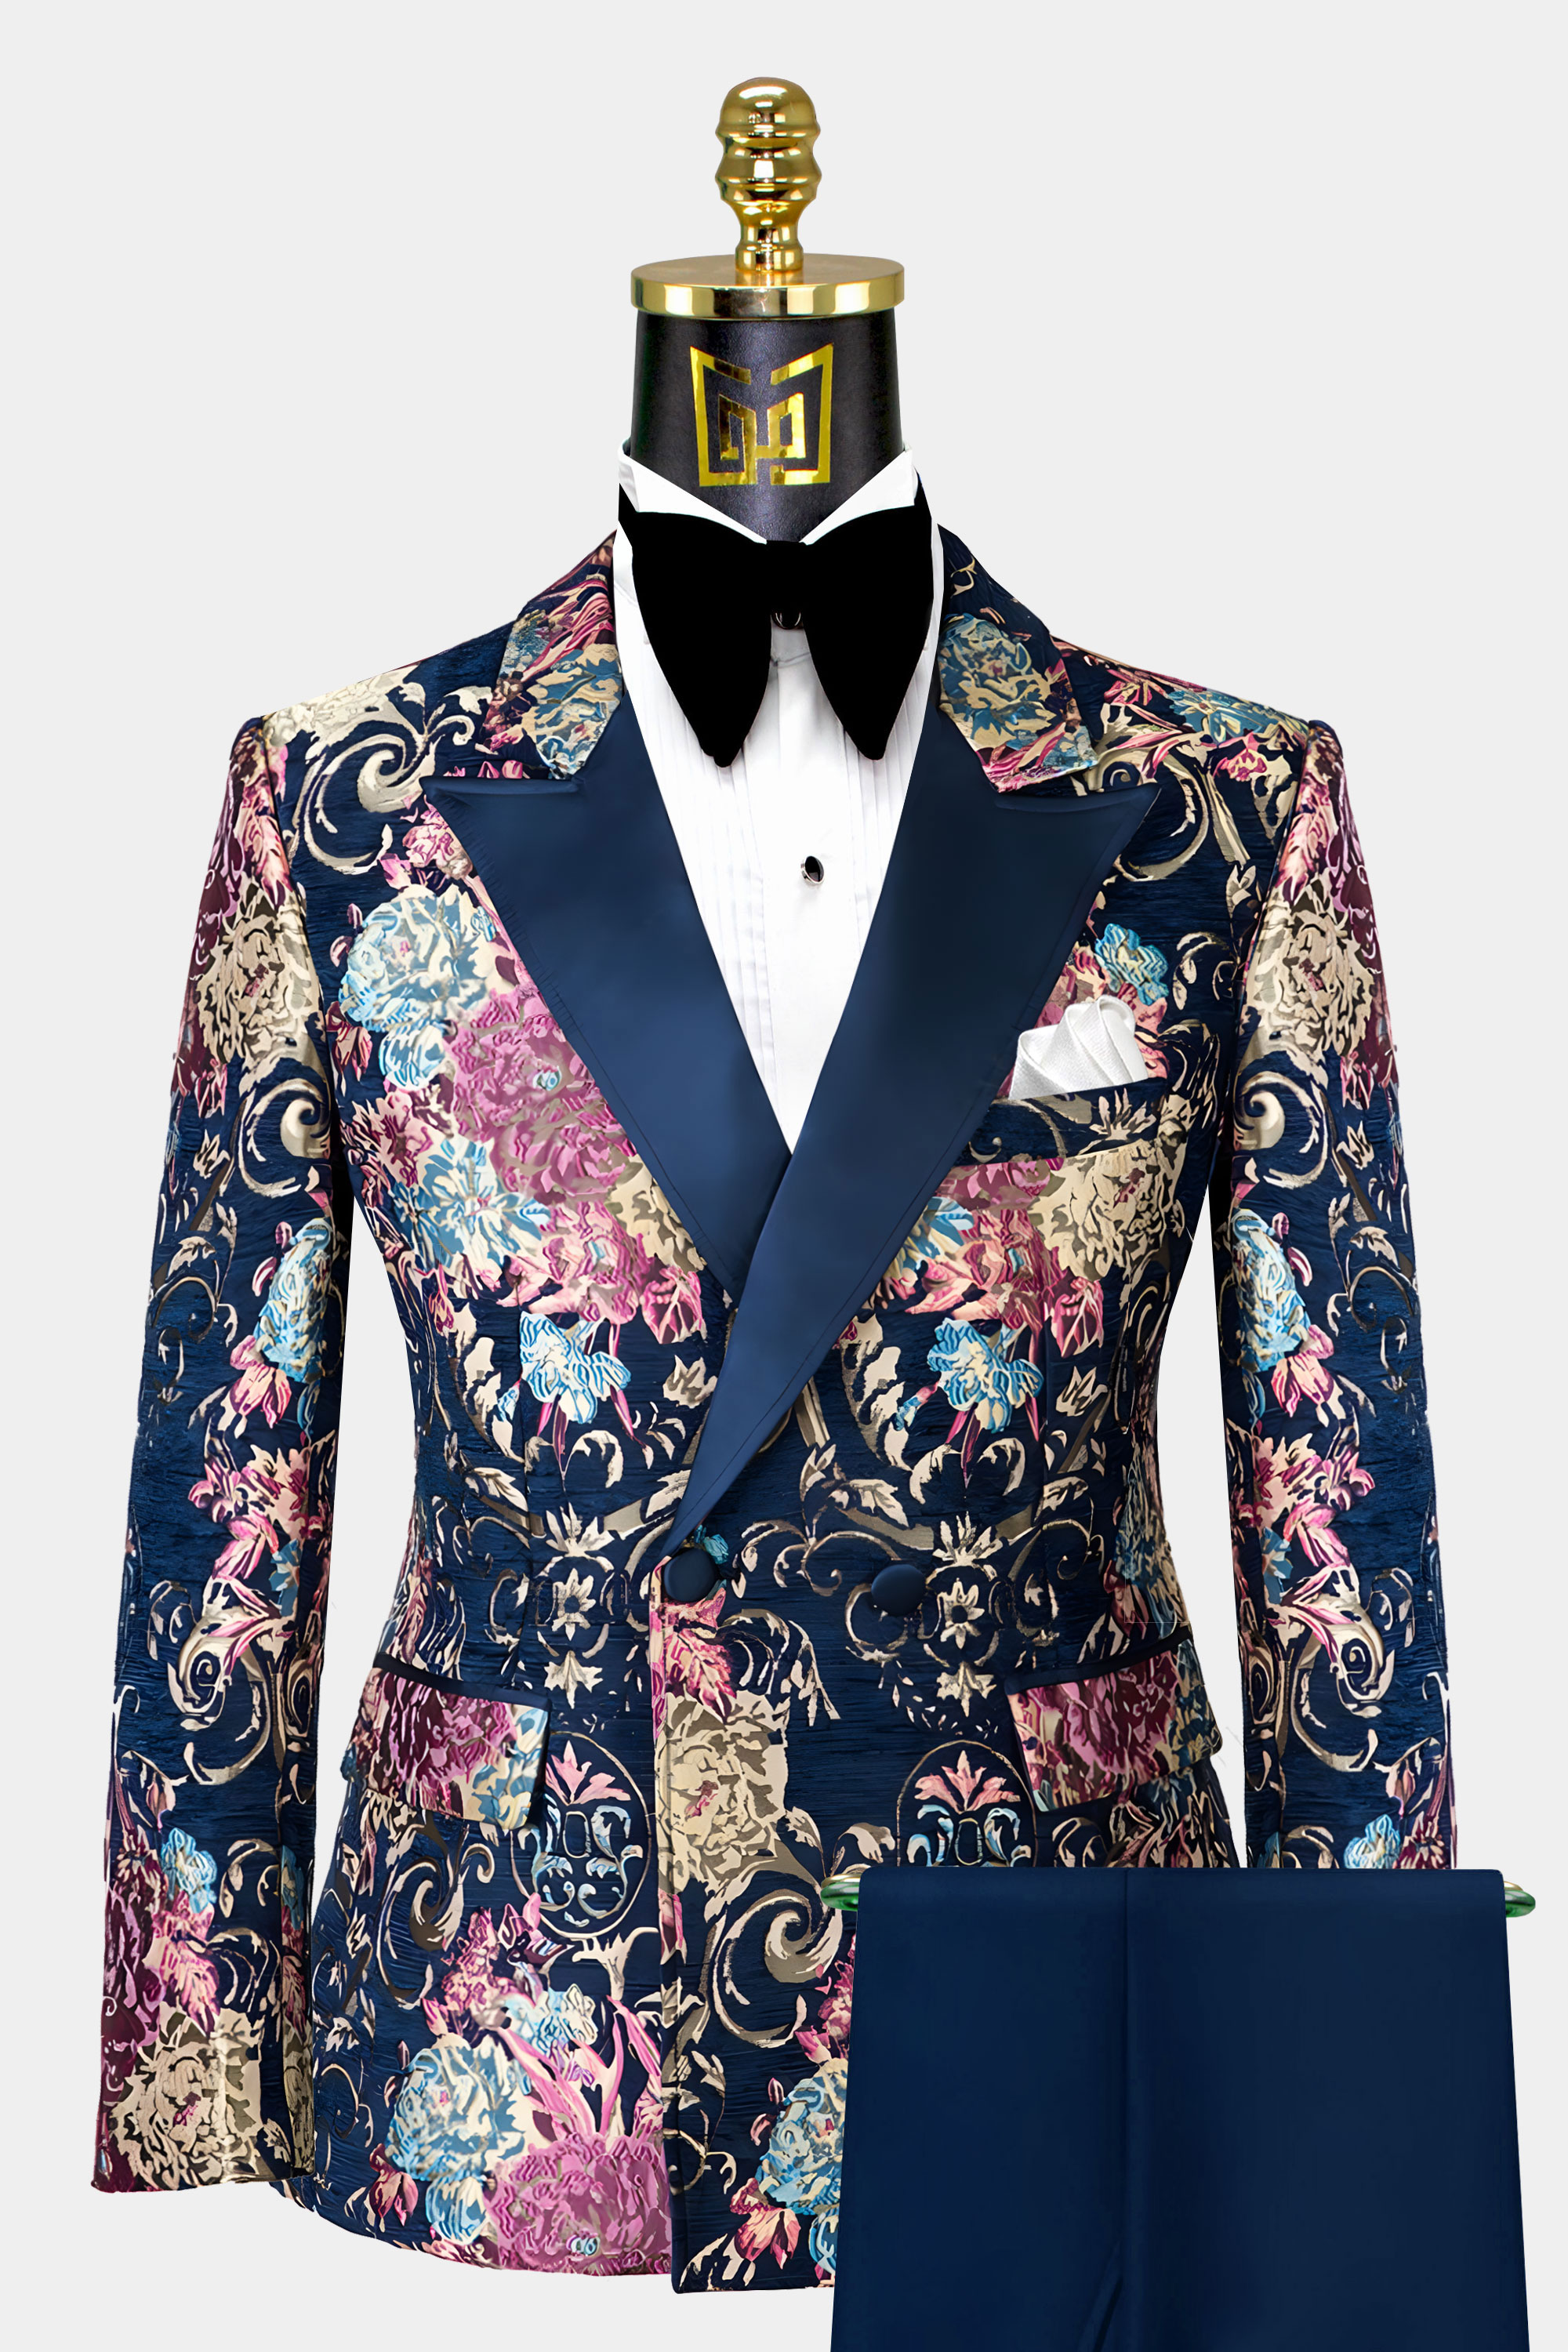 Mens-Gold-and-Navy-Blue-Tuxedo-Wedding-Groom-Prom-Suit-for-Men-from-Gentlemansguru.com_